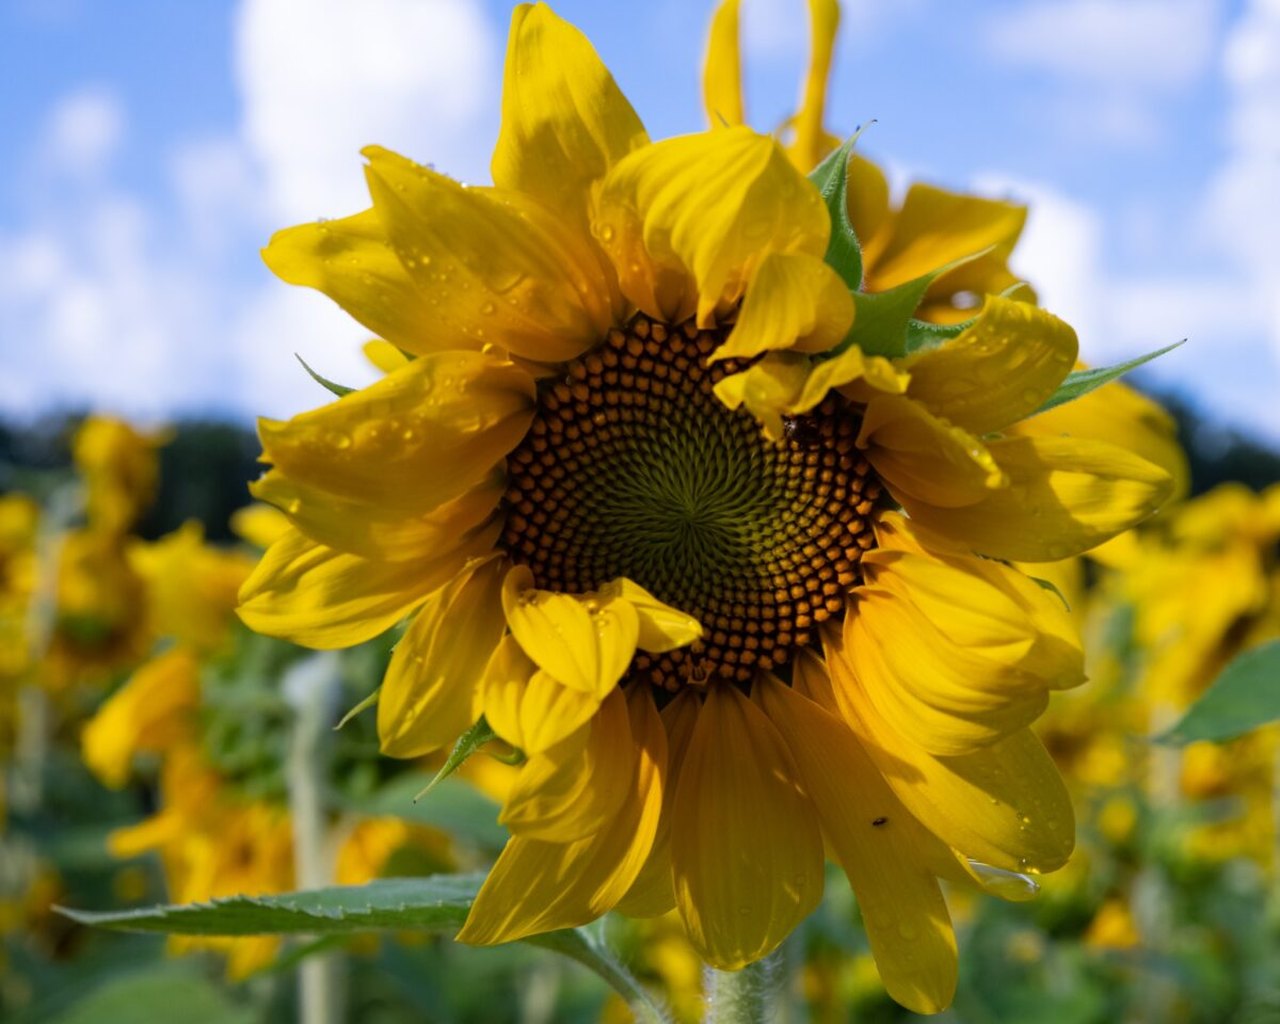 End Of Summer September Sunflower Festival In West Virginia